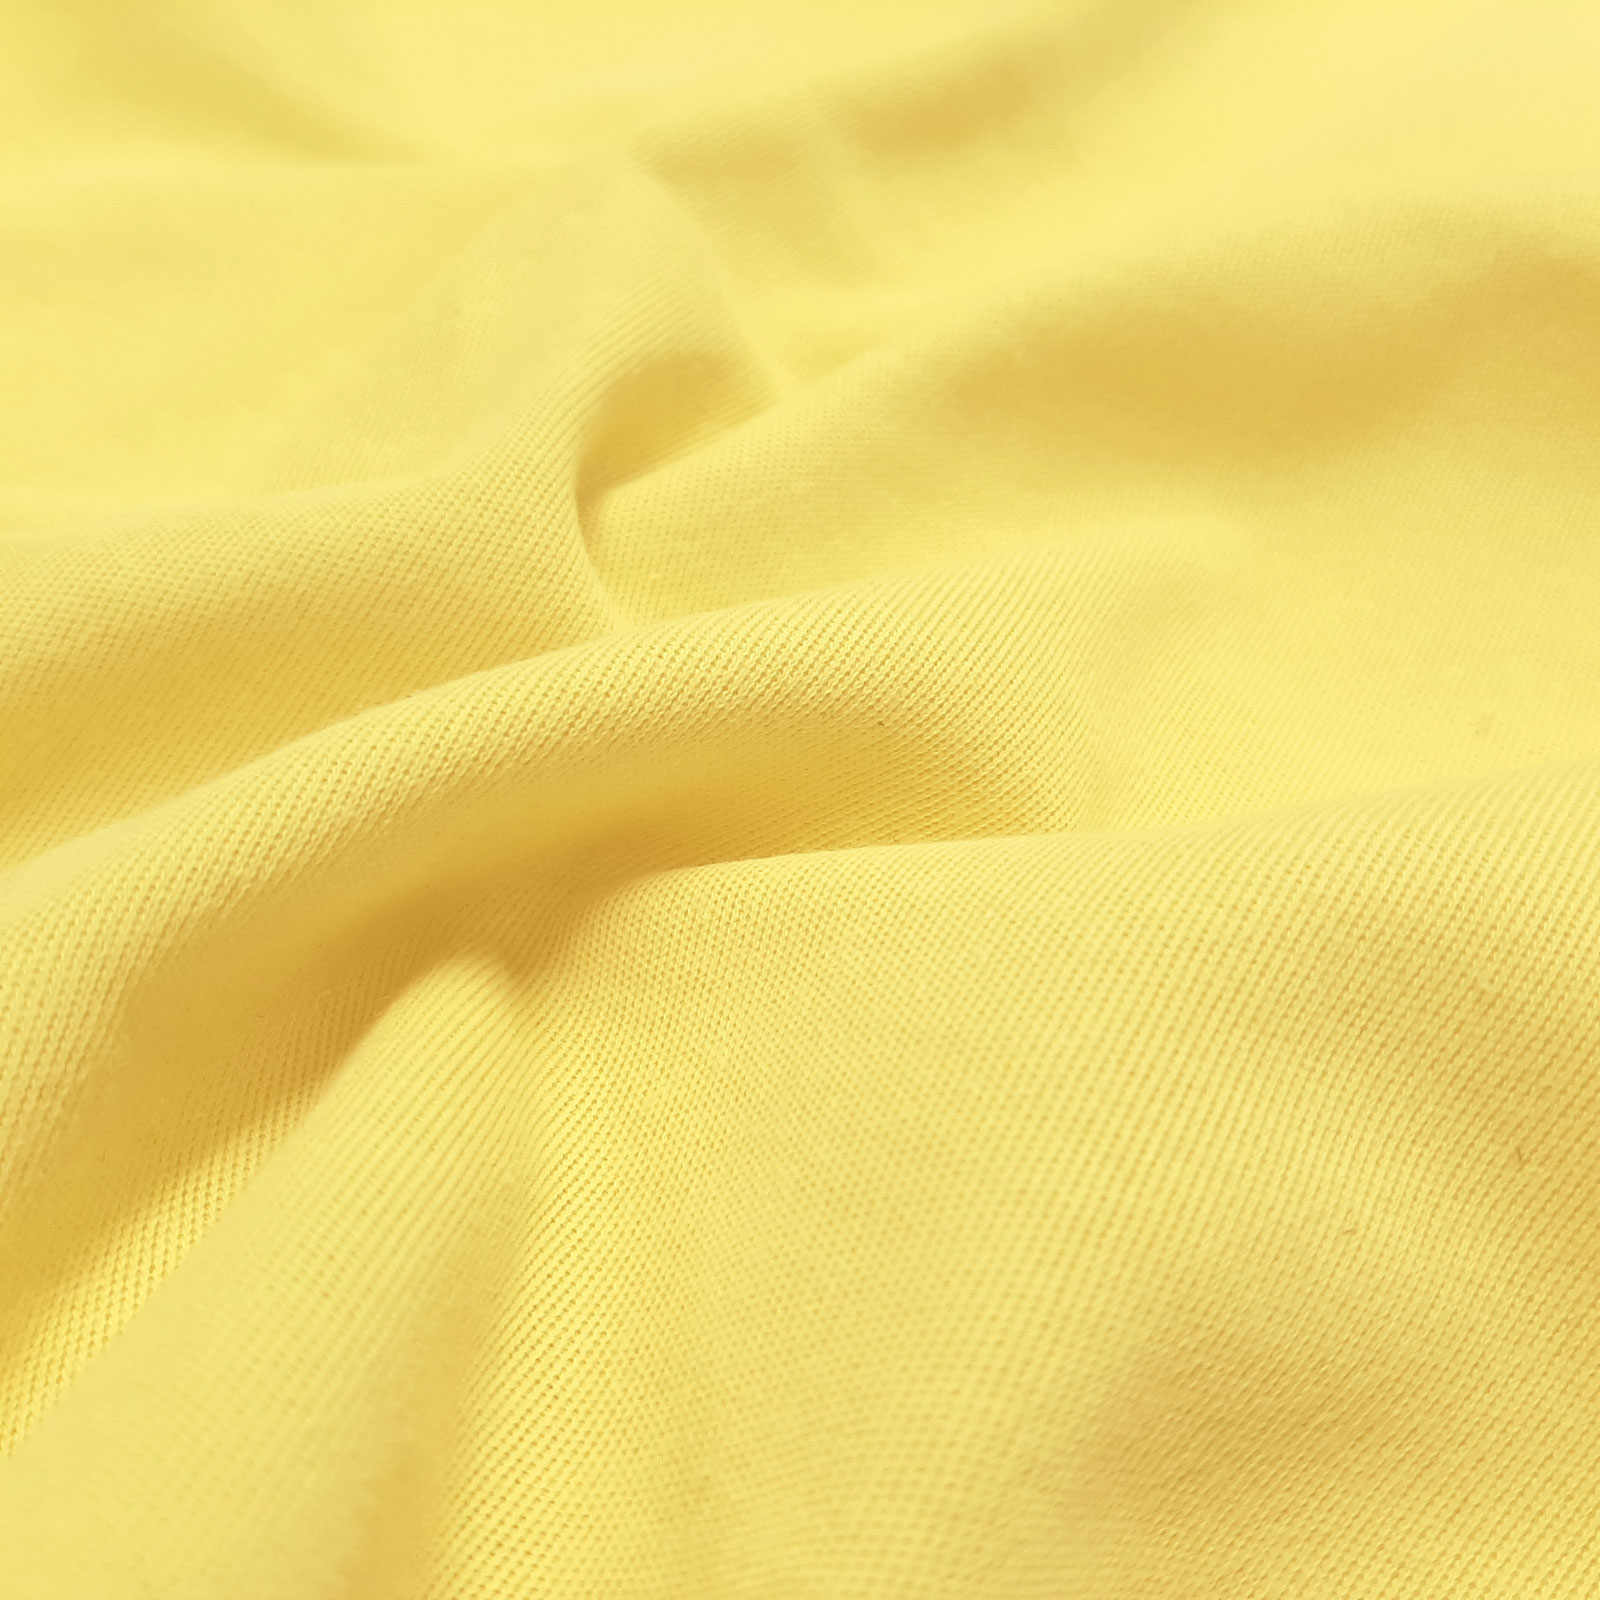 Herculette - Tessuto a maglia interlock in aramide Kevlar® per la protezione dal taglio - elastico